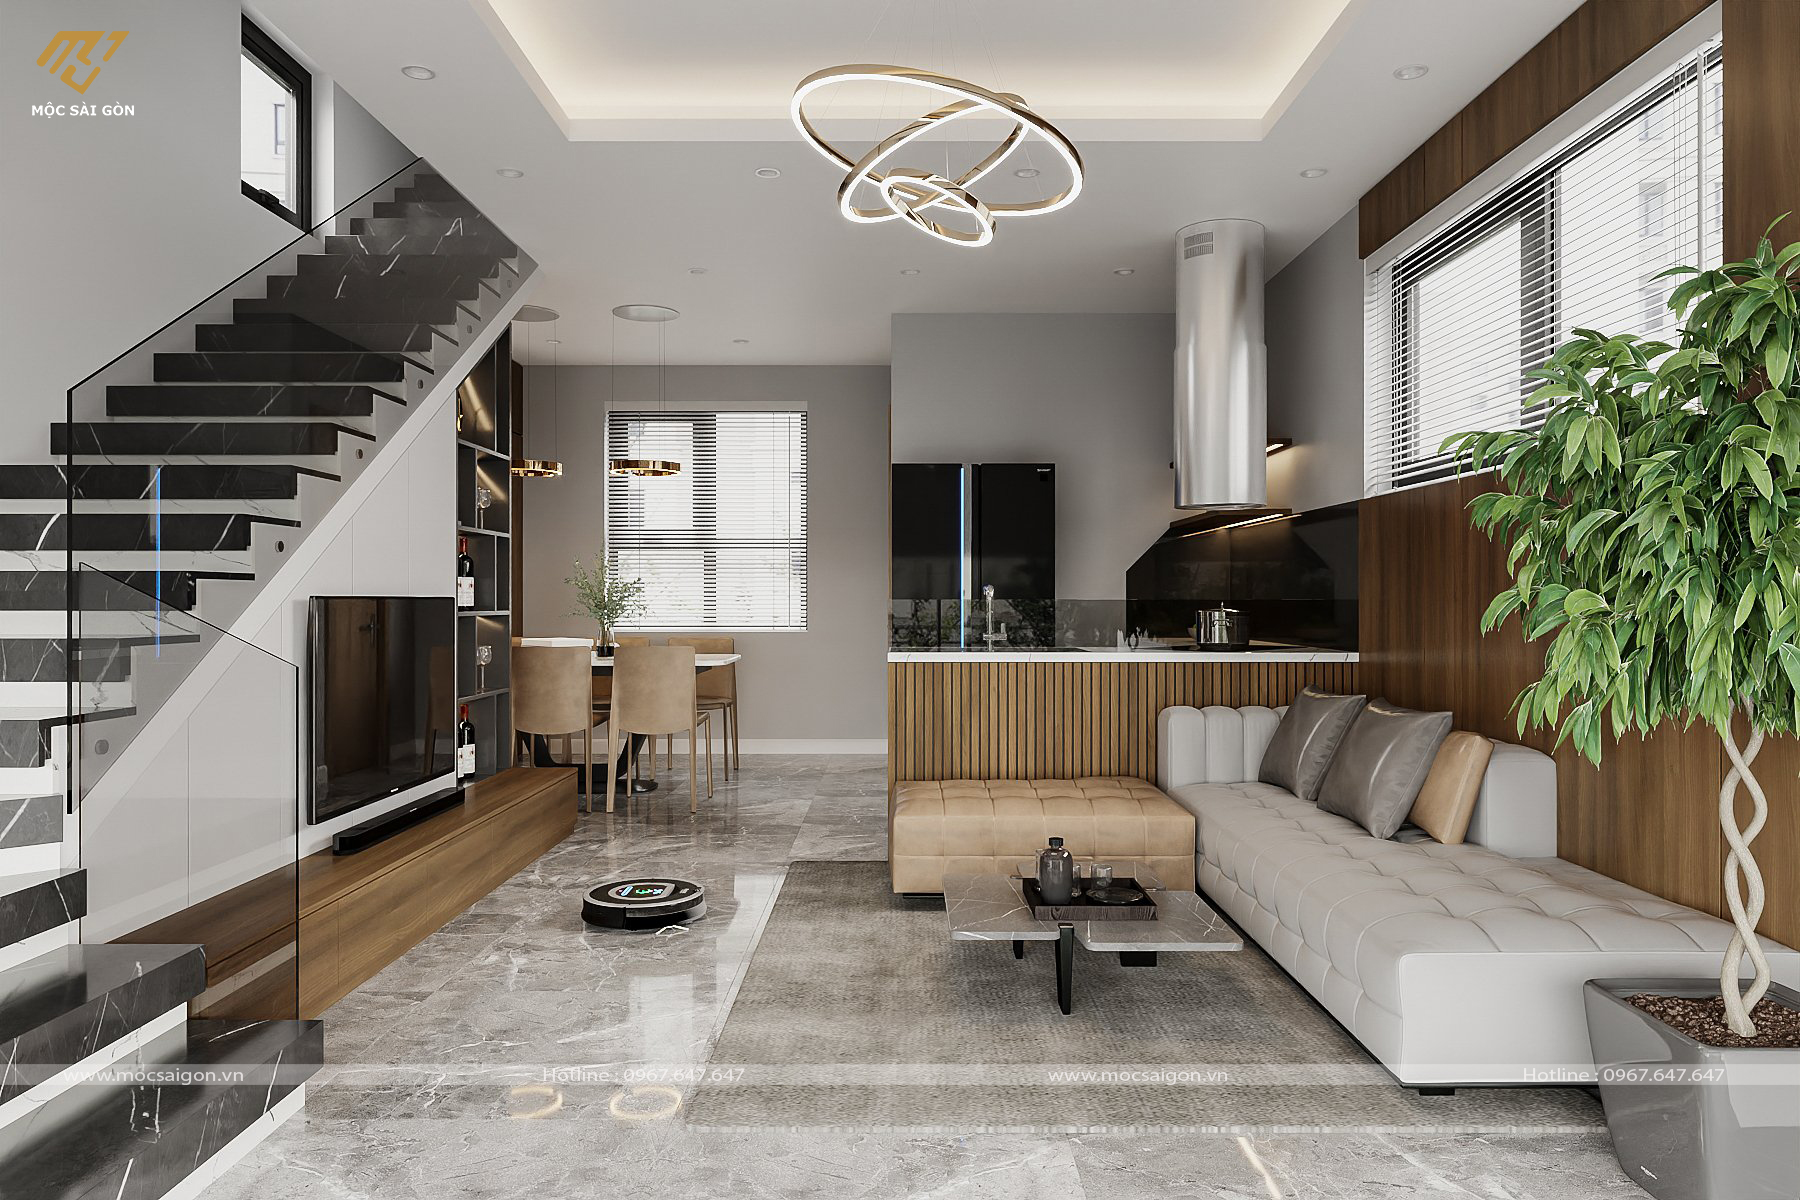 Thiết kế nội thất tại Quận 6 tạo không gian sống hoàn hảo